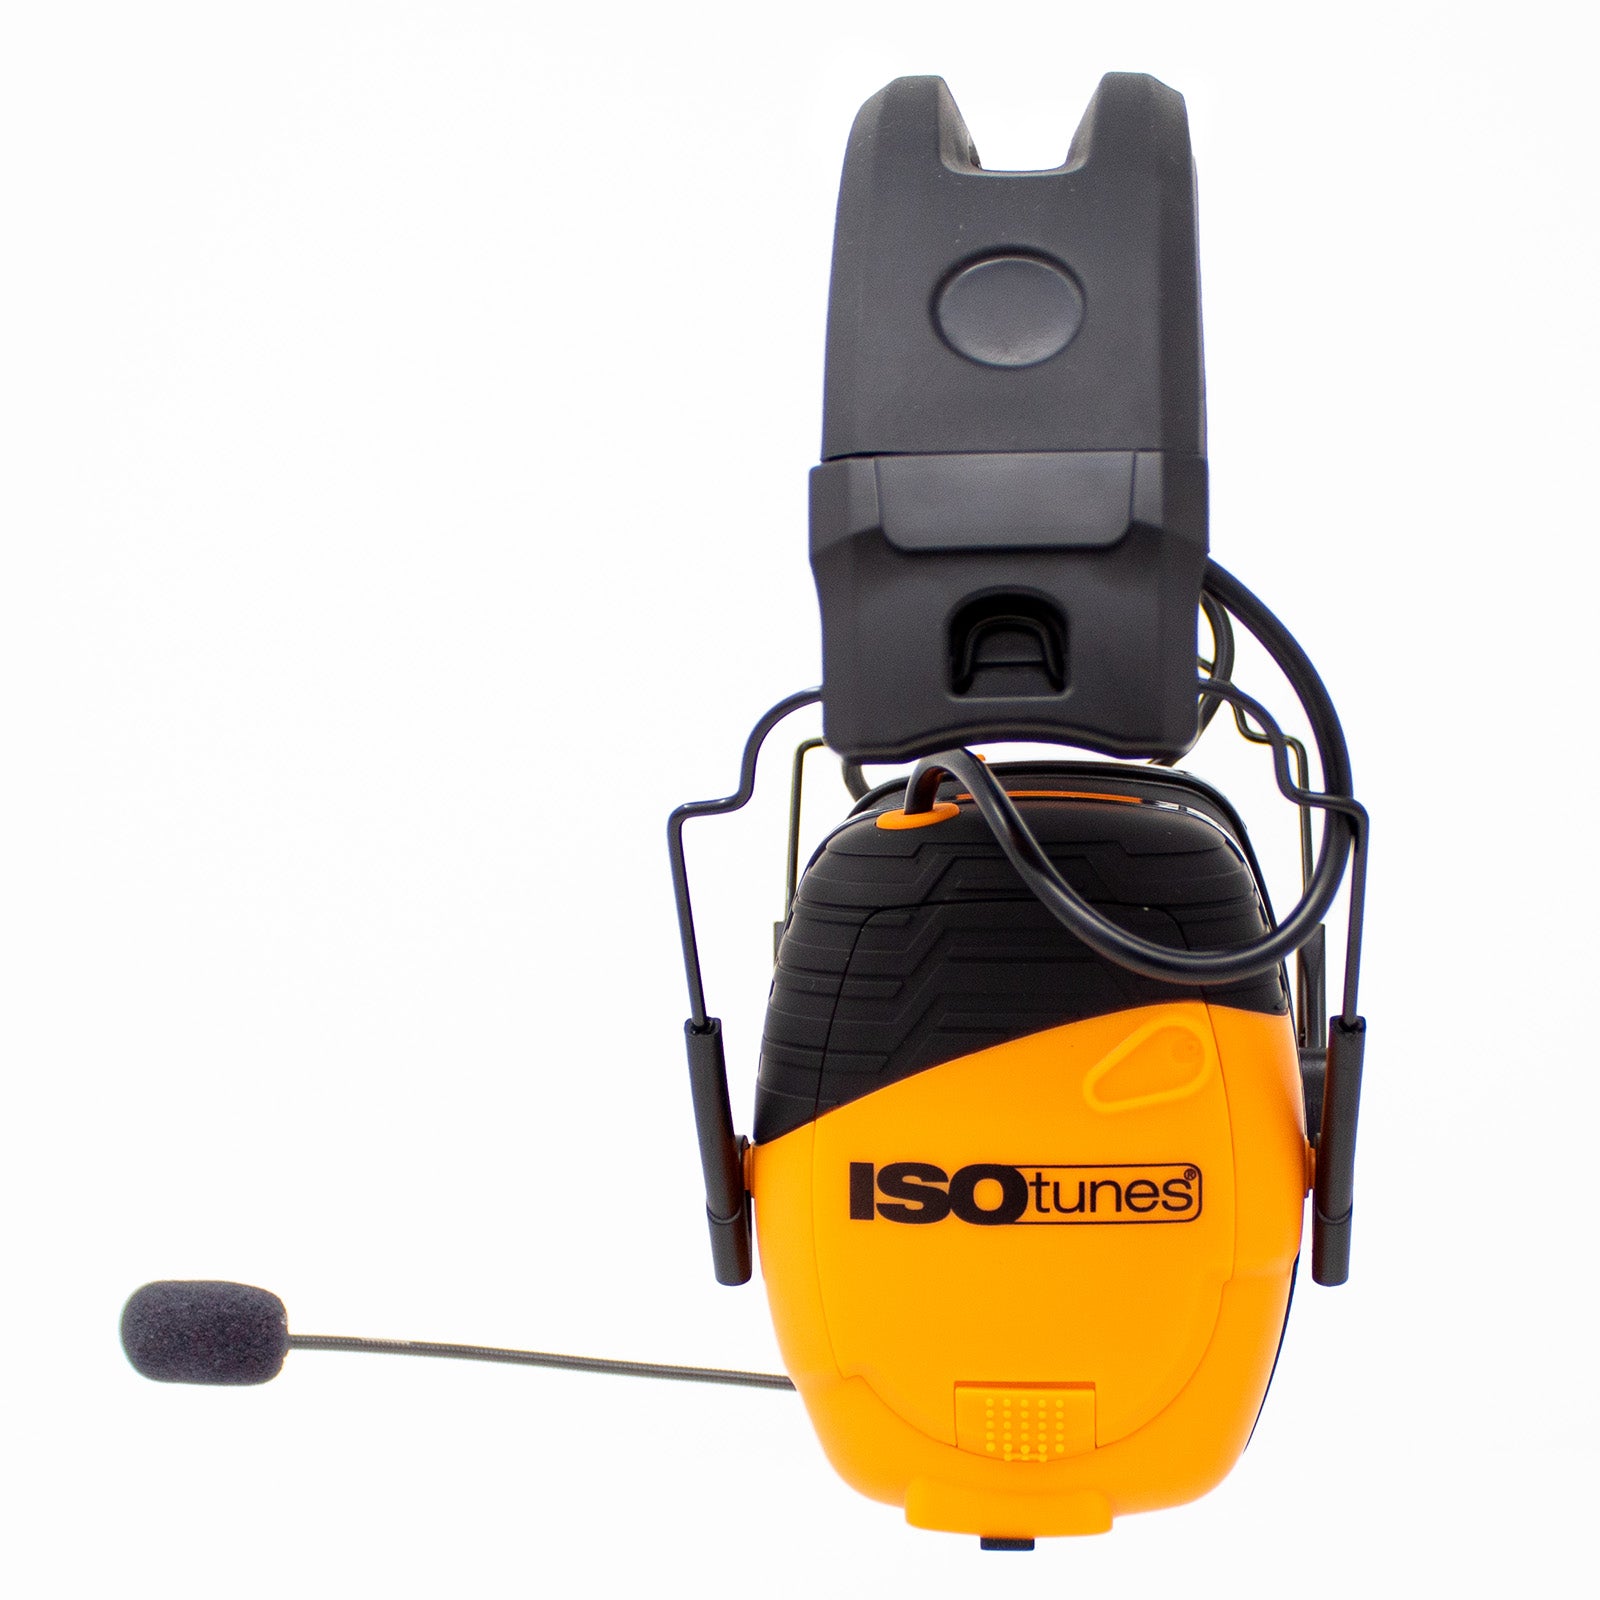 Es handelt sich hier um Boom Microfon für ISOtunes Link 2.0 für die Jagd und die Waldarbeit.